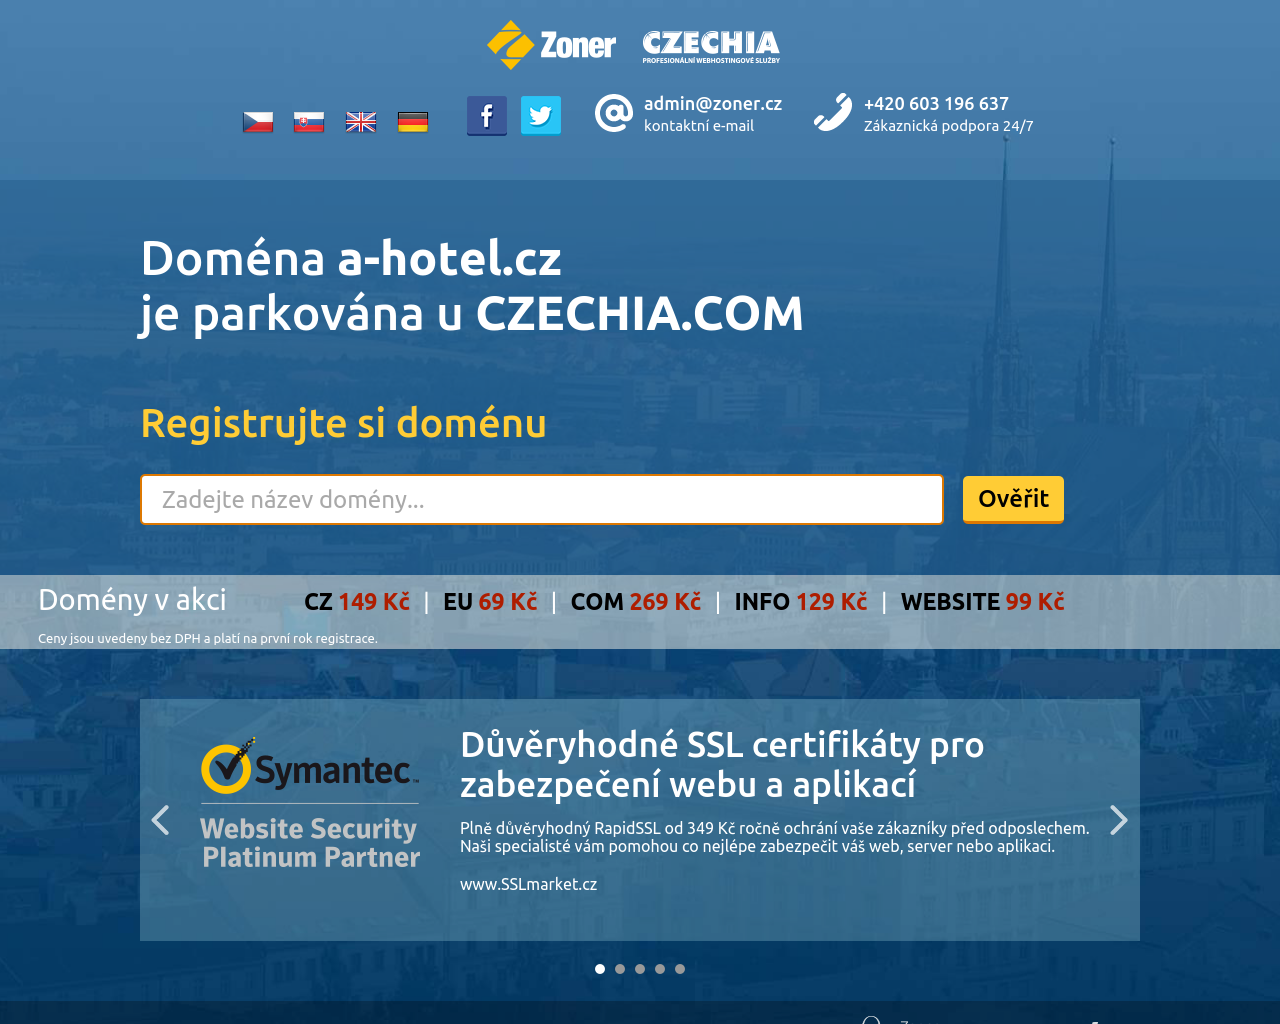 Site Image a-hotel.cz v 1280x1024